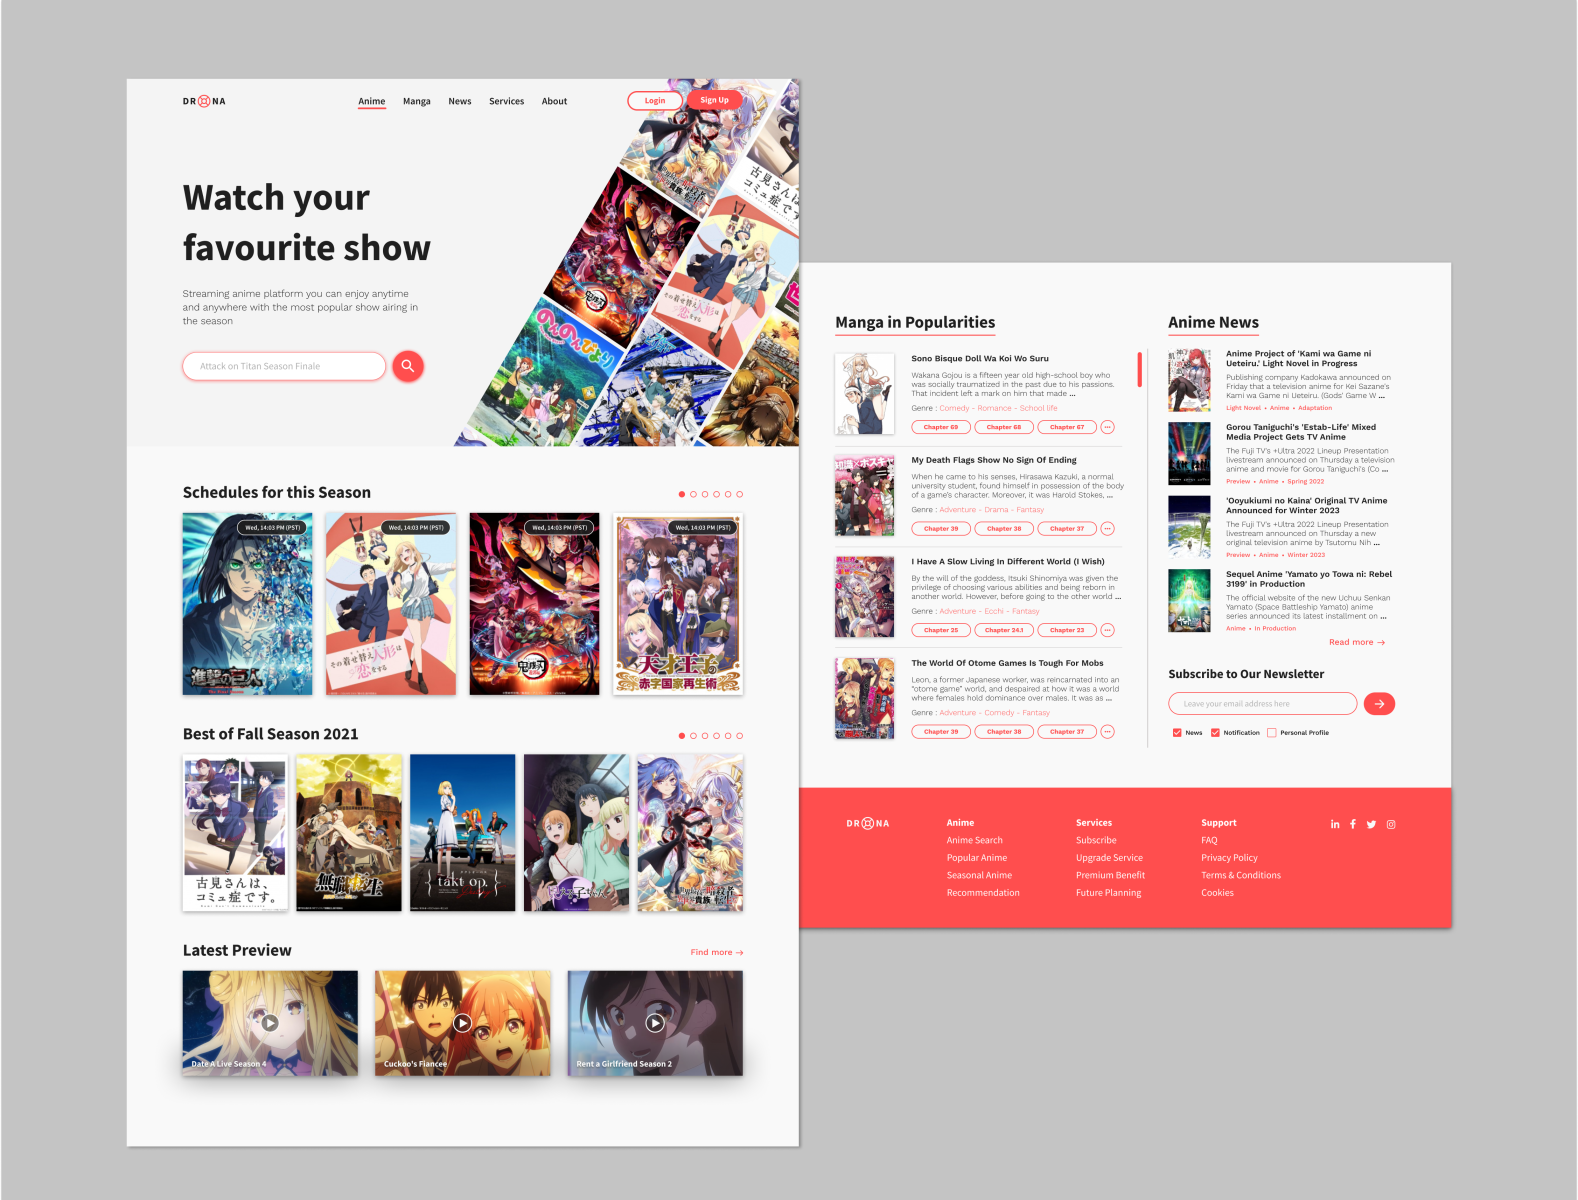 Bleach Anime - Another top anime website shutdown (Check... | Facebook